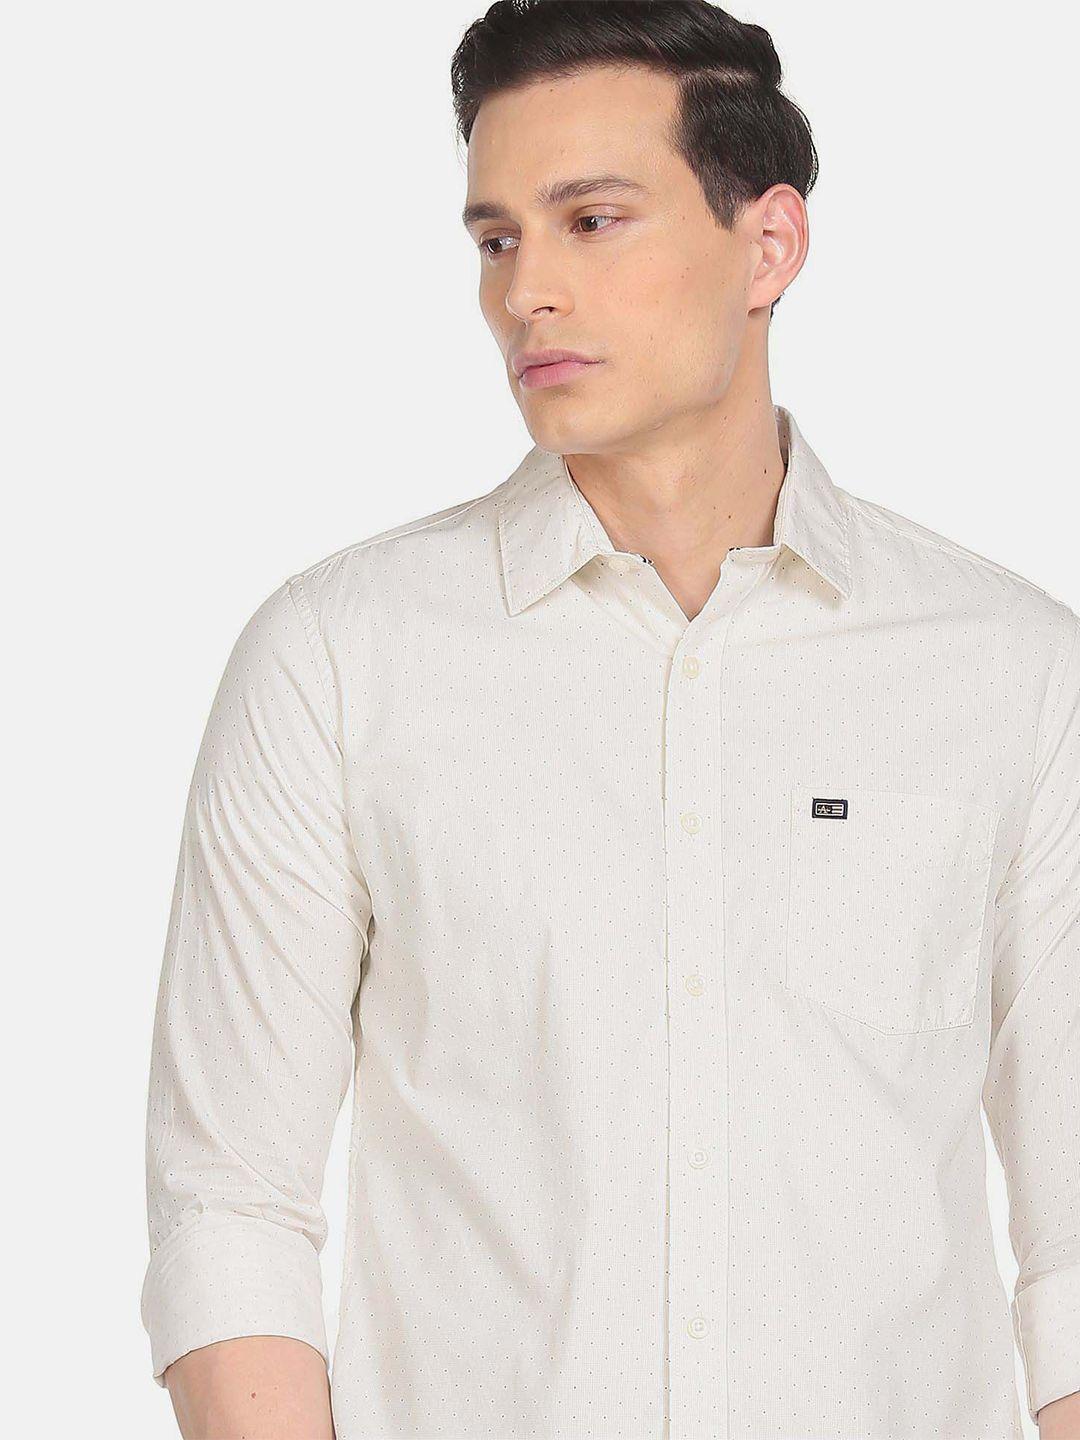 arrow-sport-spread-collar-cotton-casual-shirt